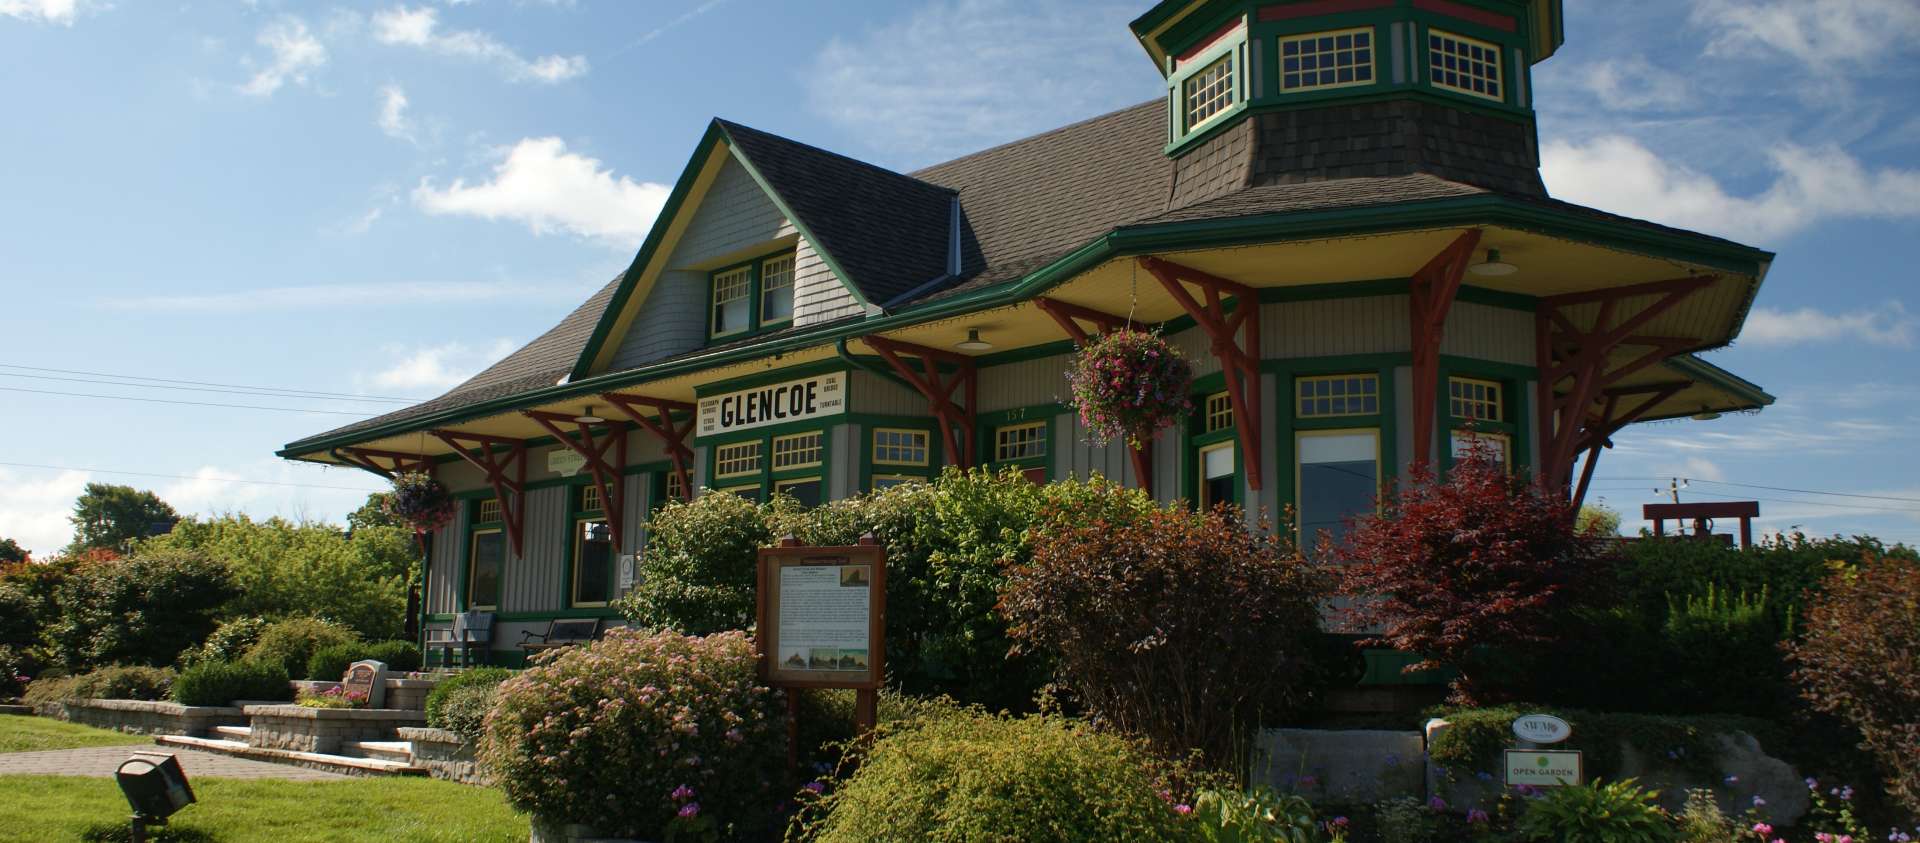 Glencoe Train Station Image